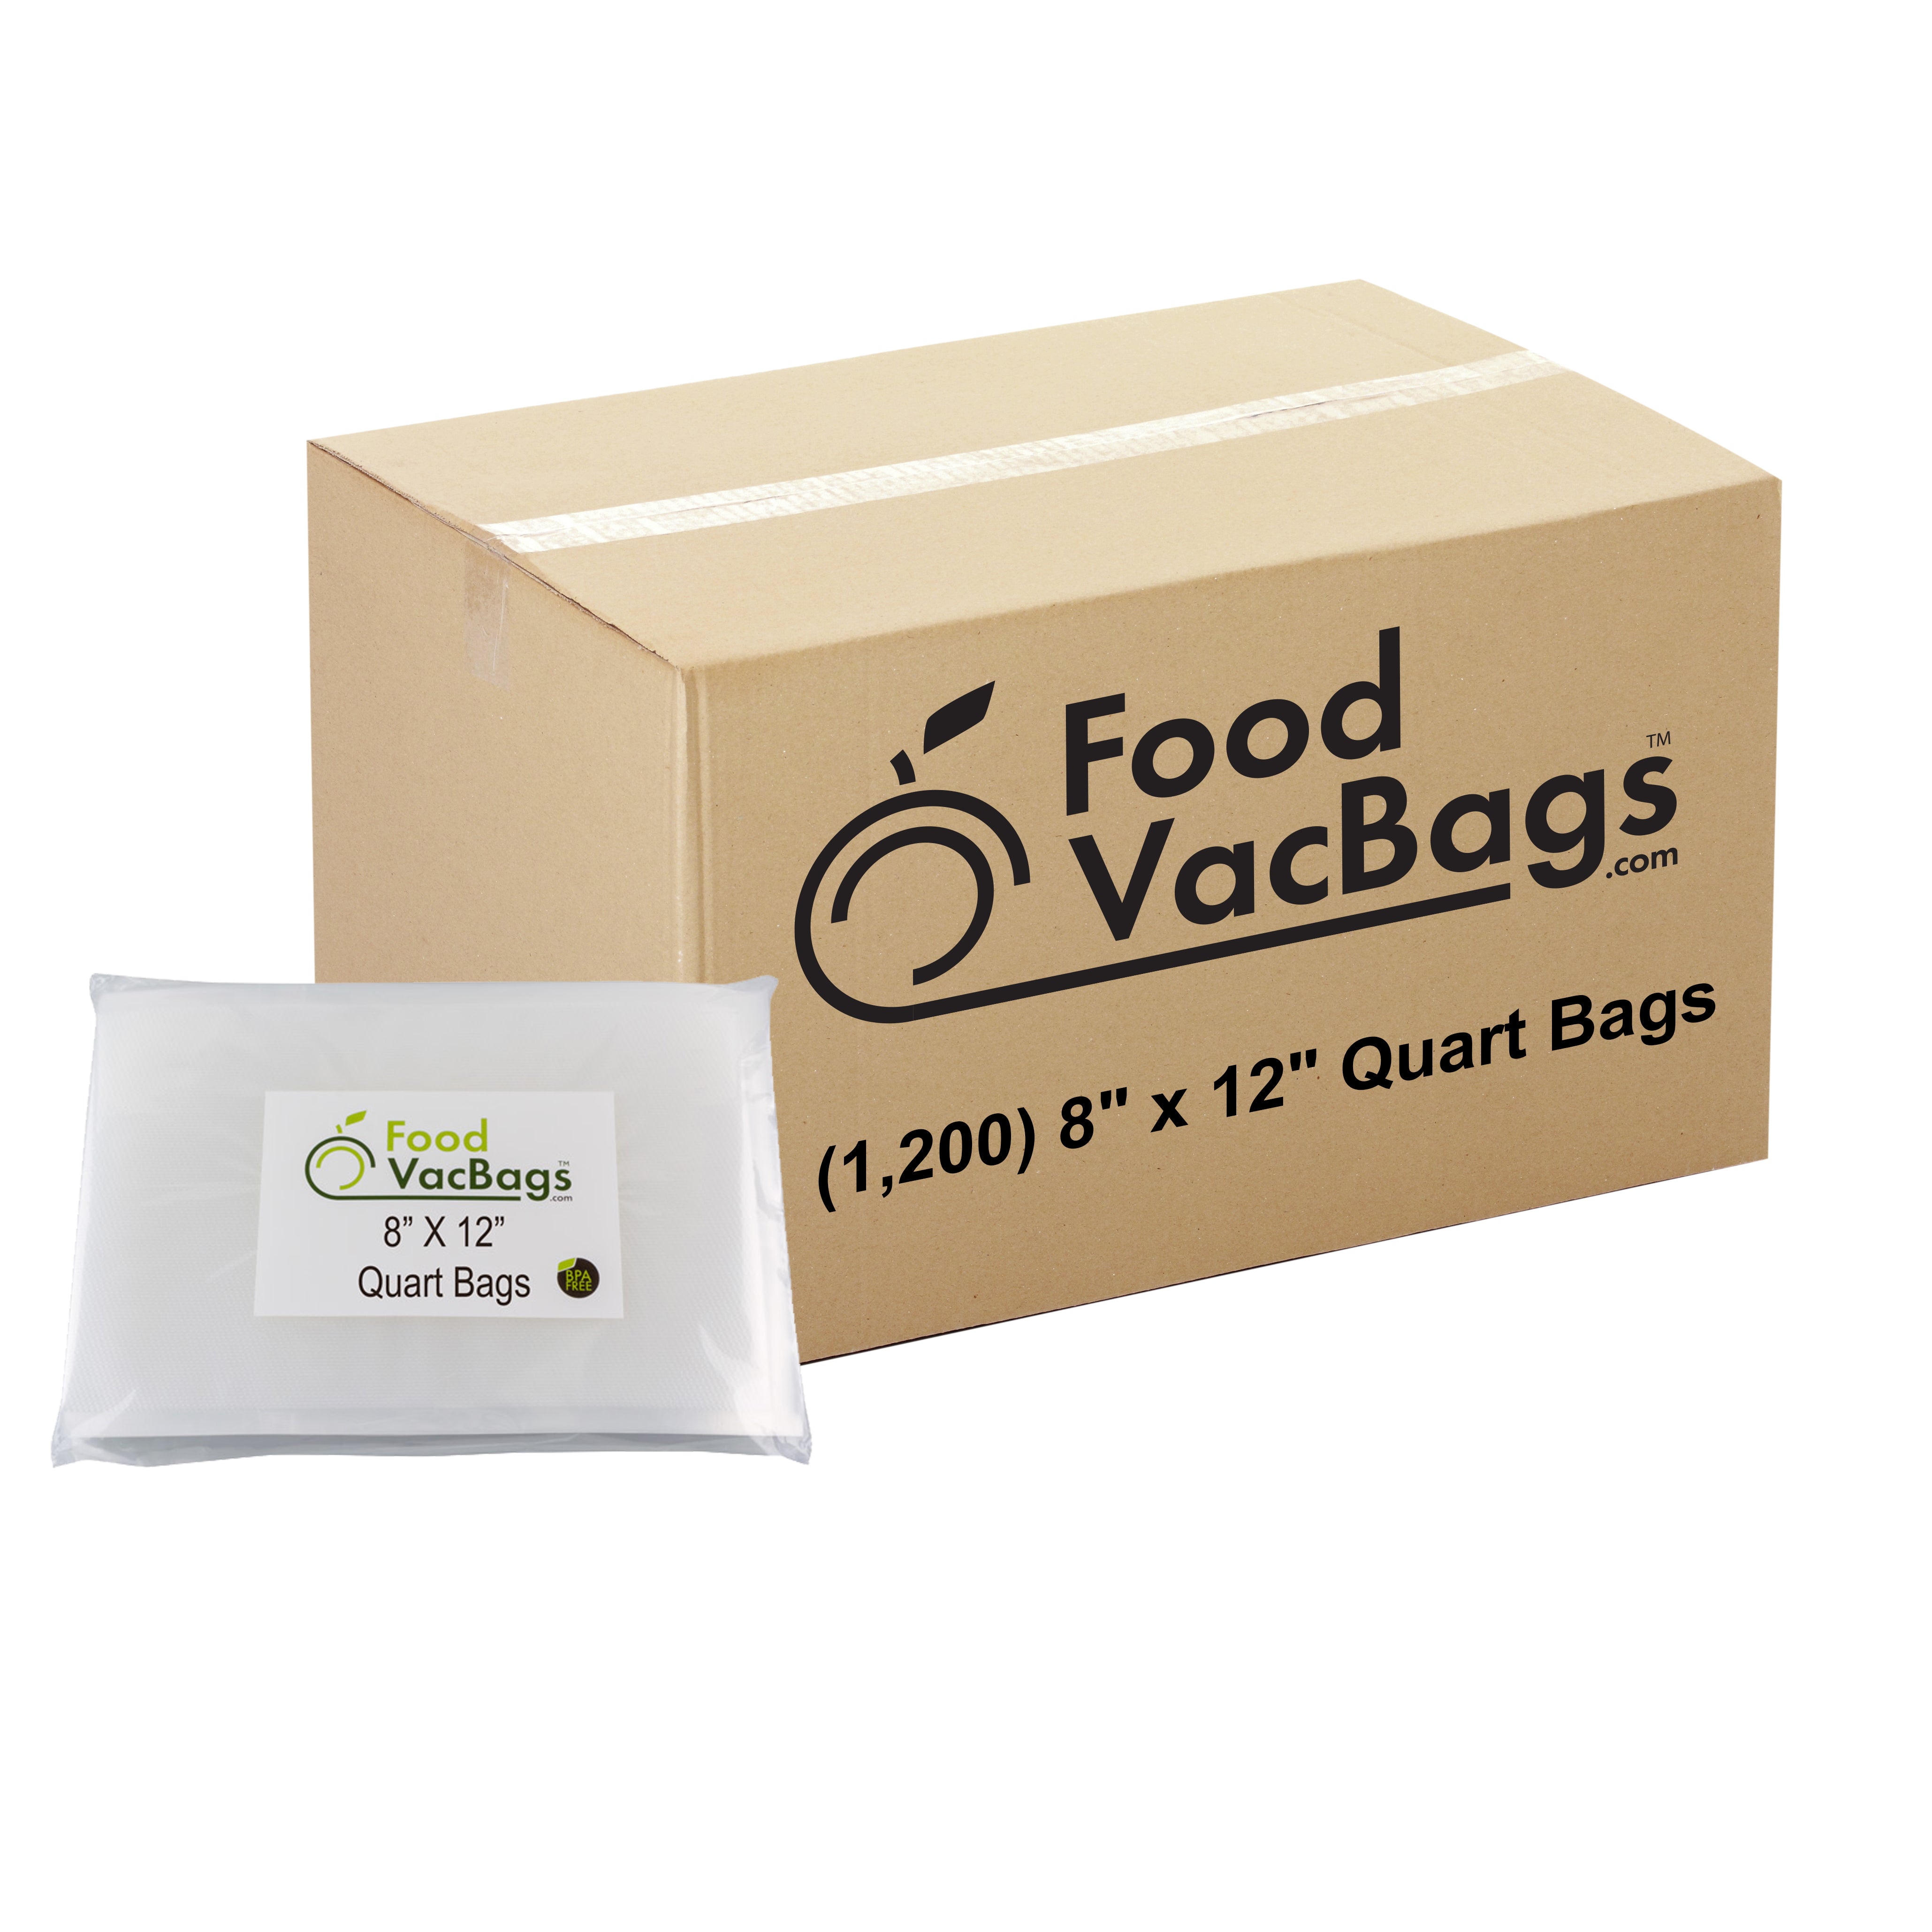 1200 FoodVacBags 8" X 12" Quart Bags - FoodSaver Compatible - Sous Vide